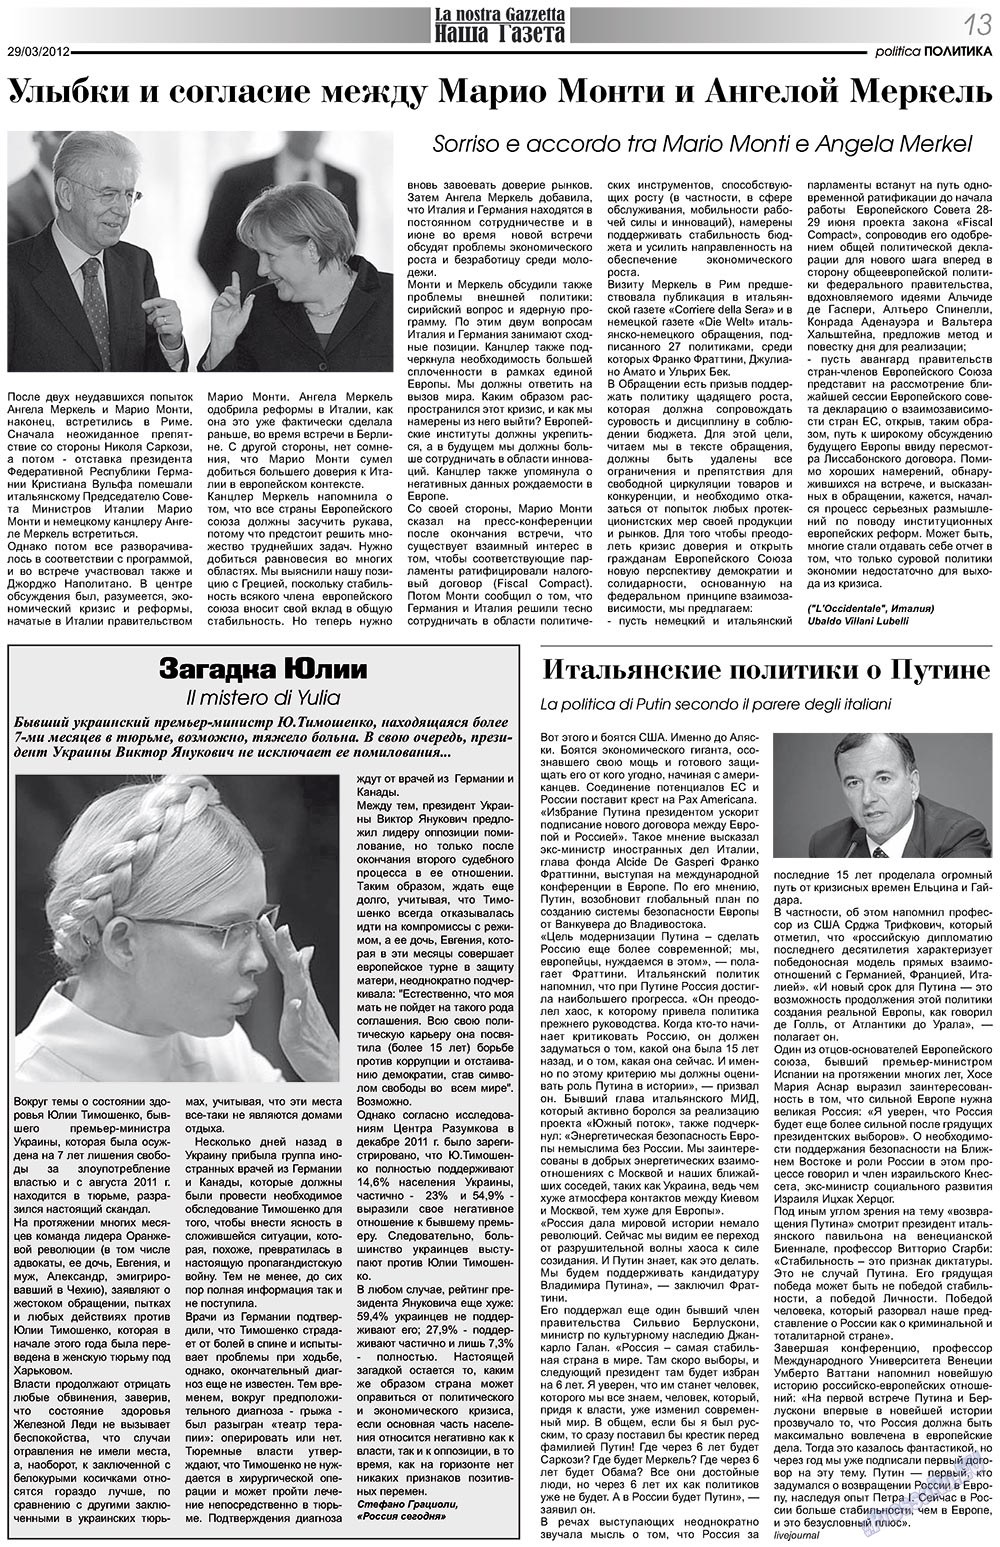 Наша Газета Италия, газета. 2012 №153 стр.13